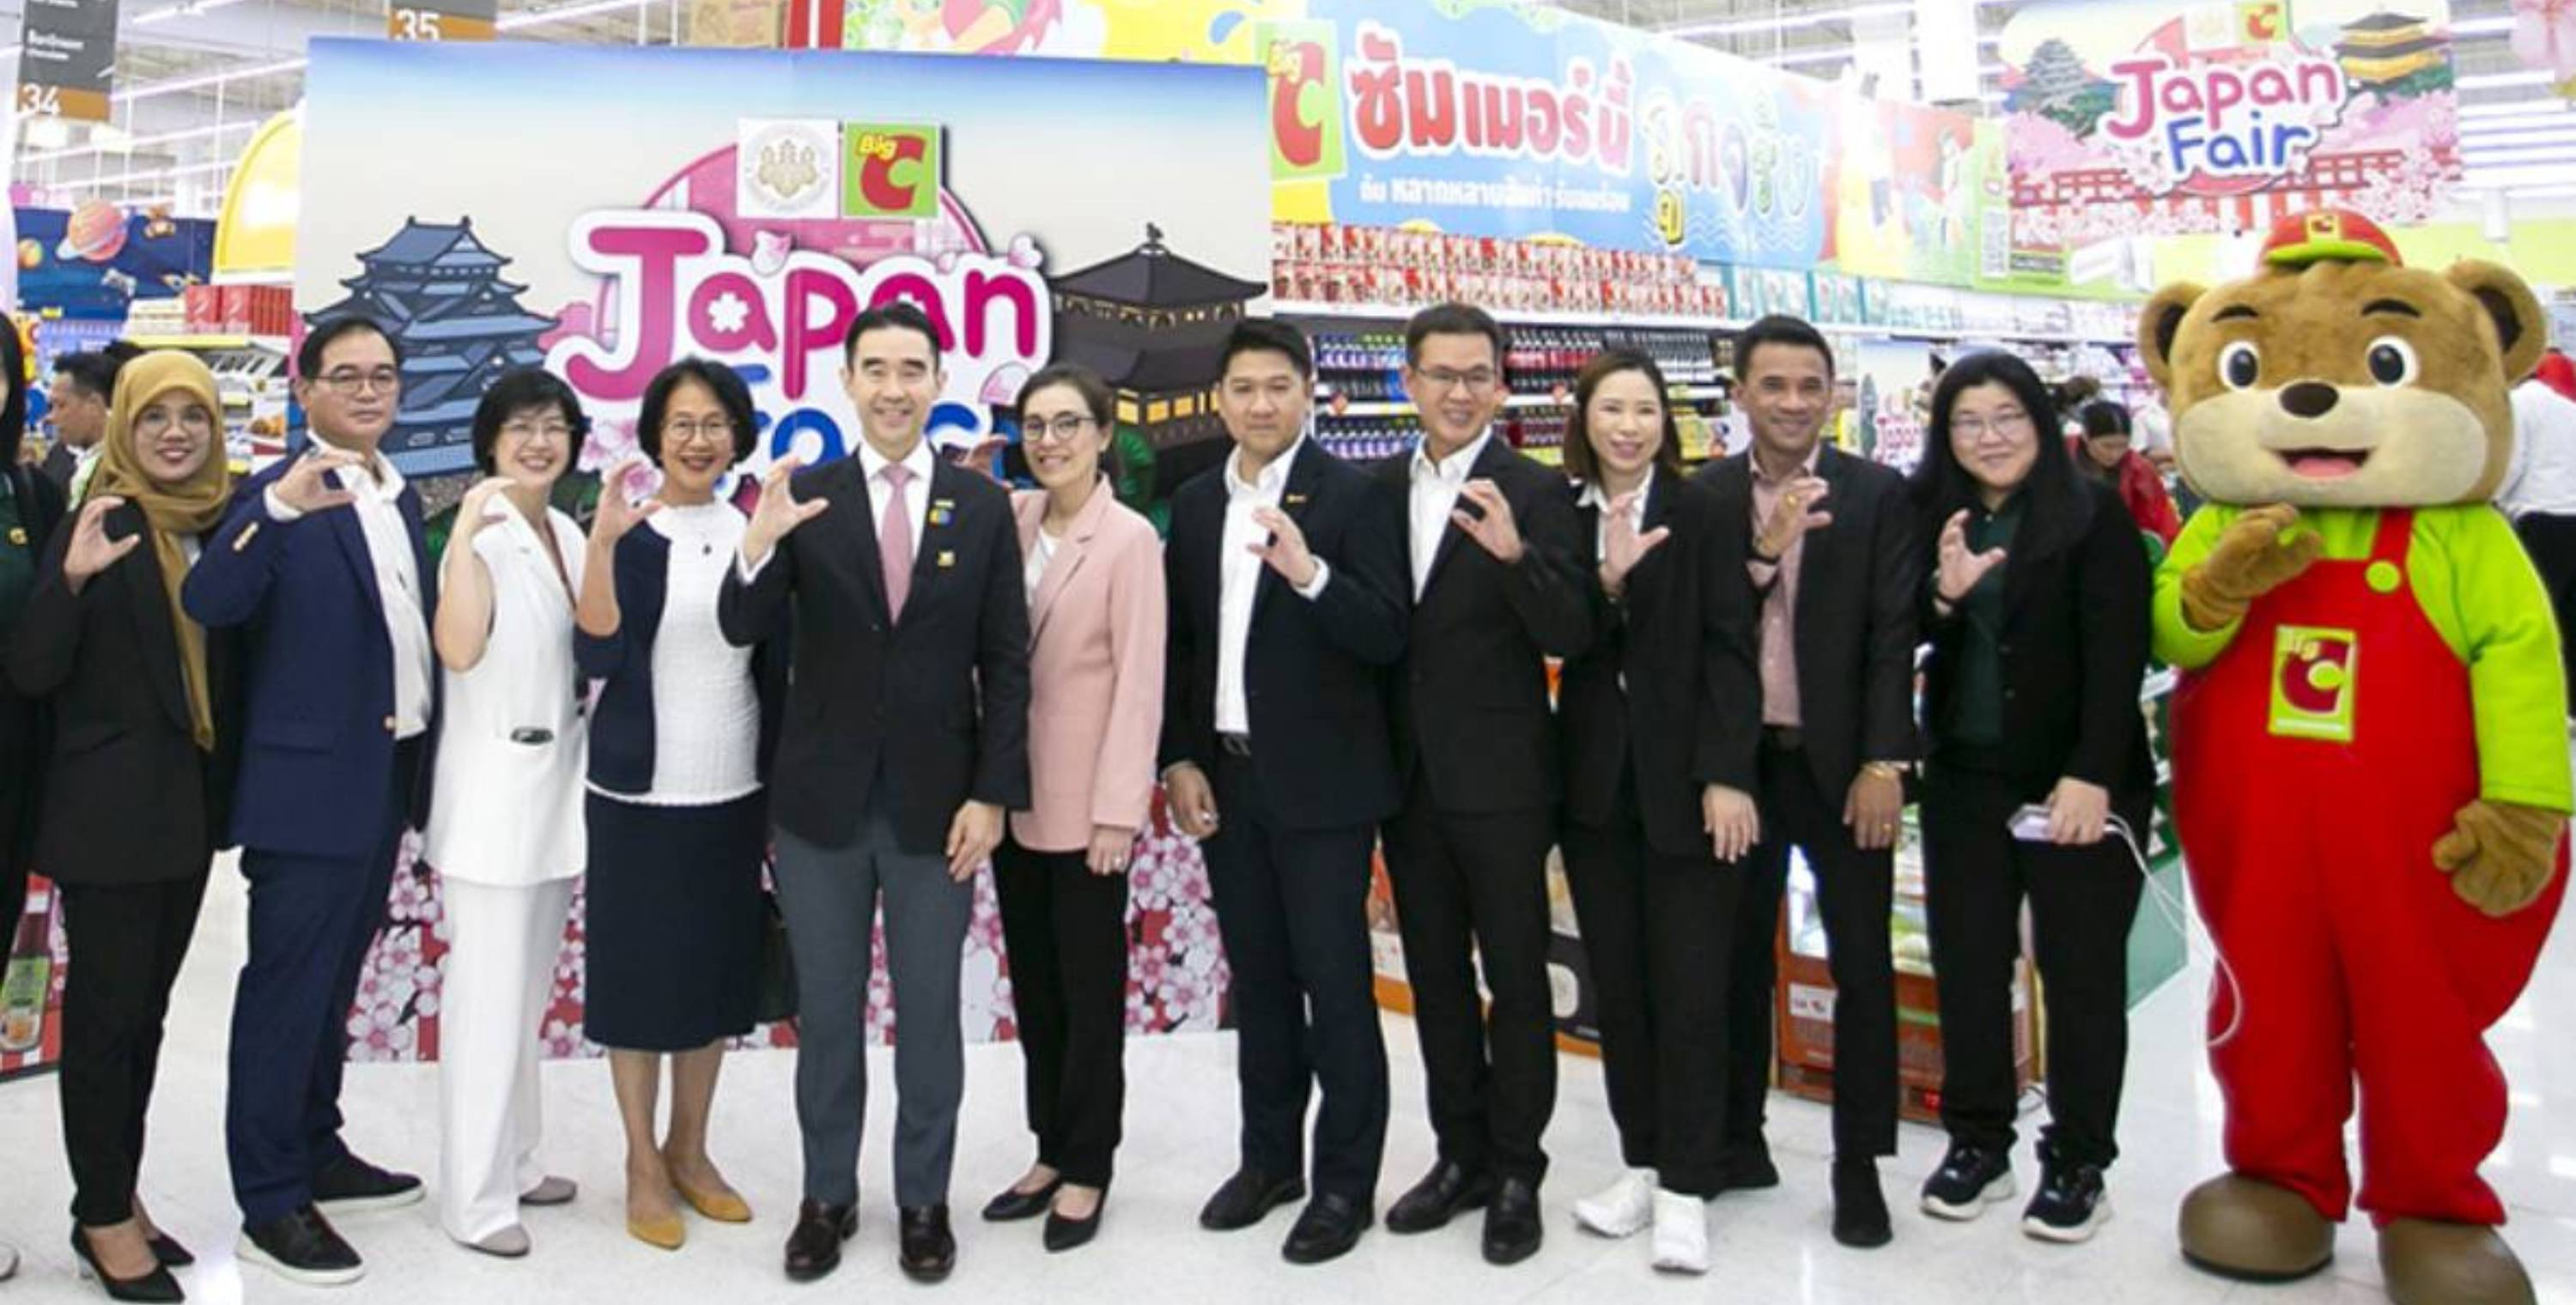 บิ๊กซี จัดงาน “Japan Fair” ชวนชอปสินค้านำเข้าคุณภาพระดับพรีเมียม  จากประเทศญี่ปุ่น มาจัดโปรโมชันลดสูงสุด 30 %